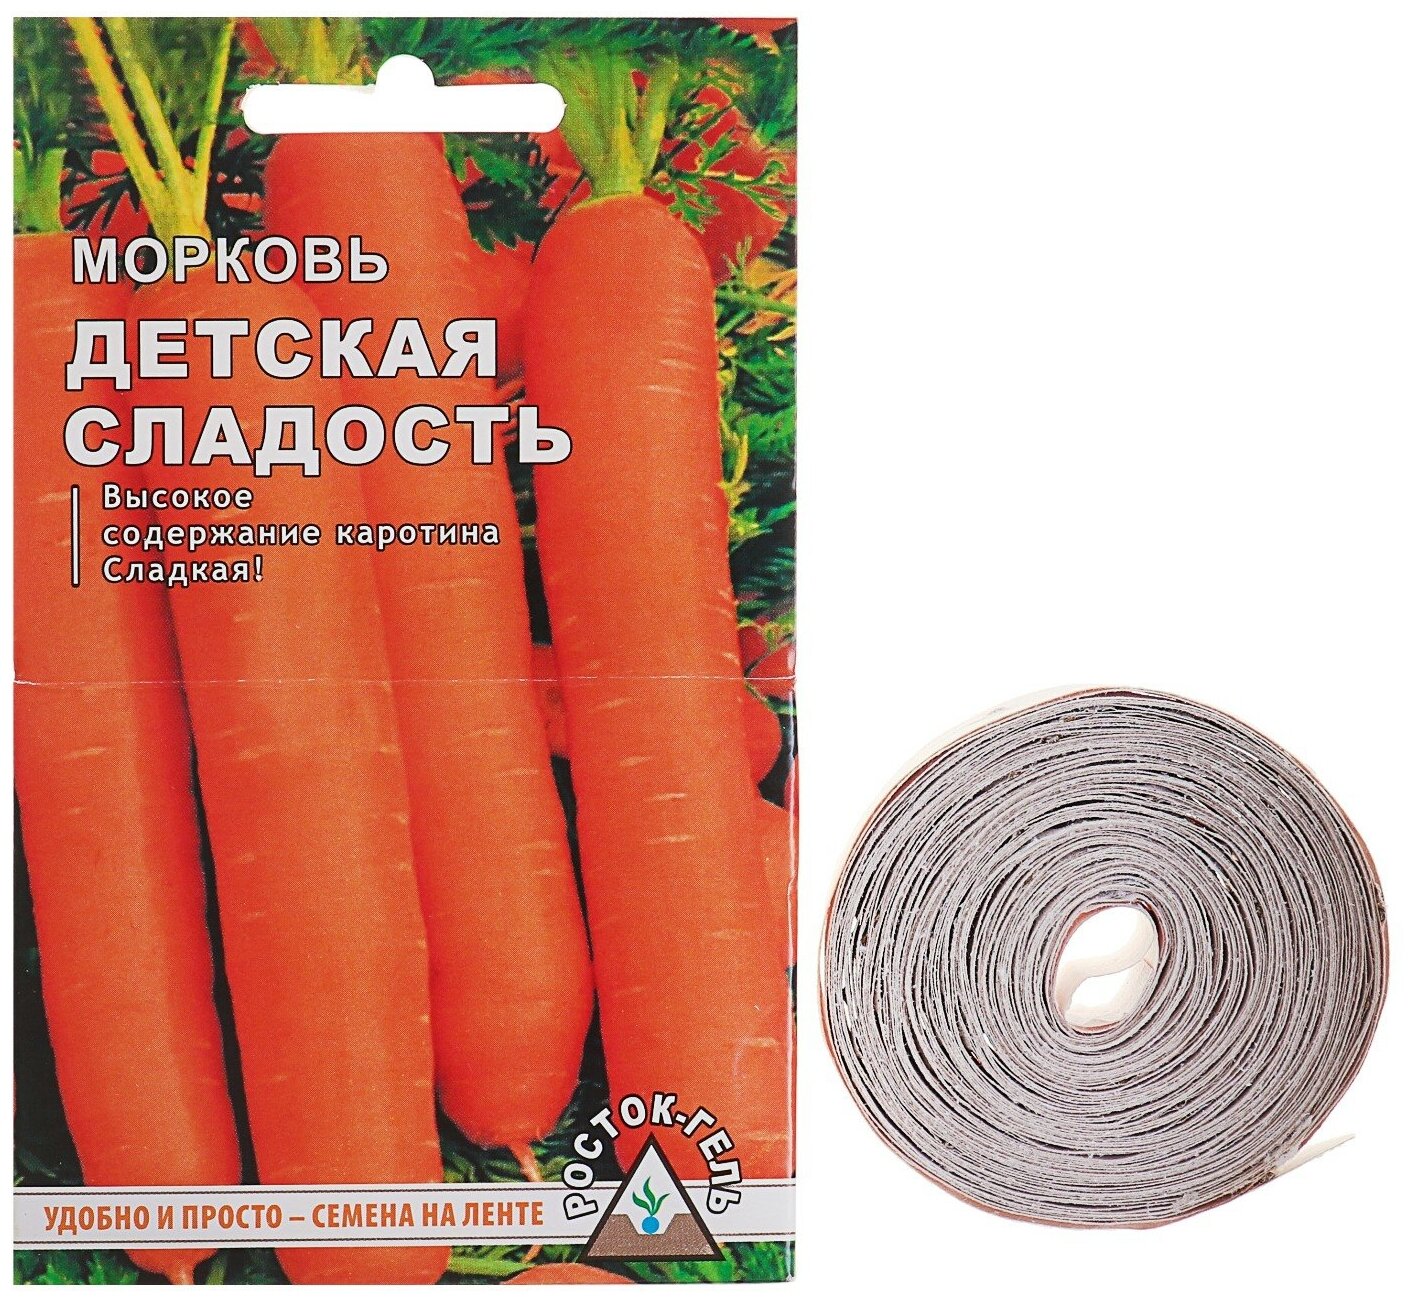 Семена Морковь"Детская сладость" семена на ленте